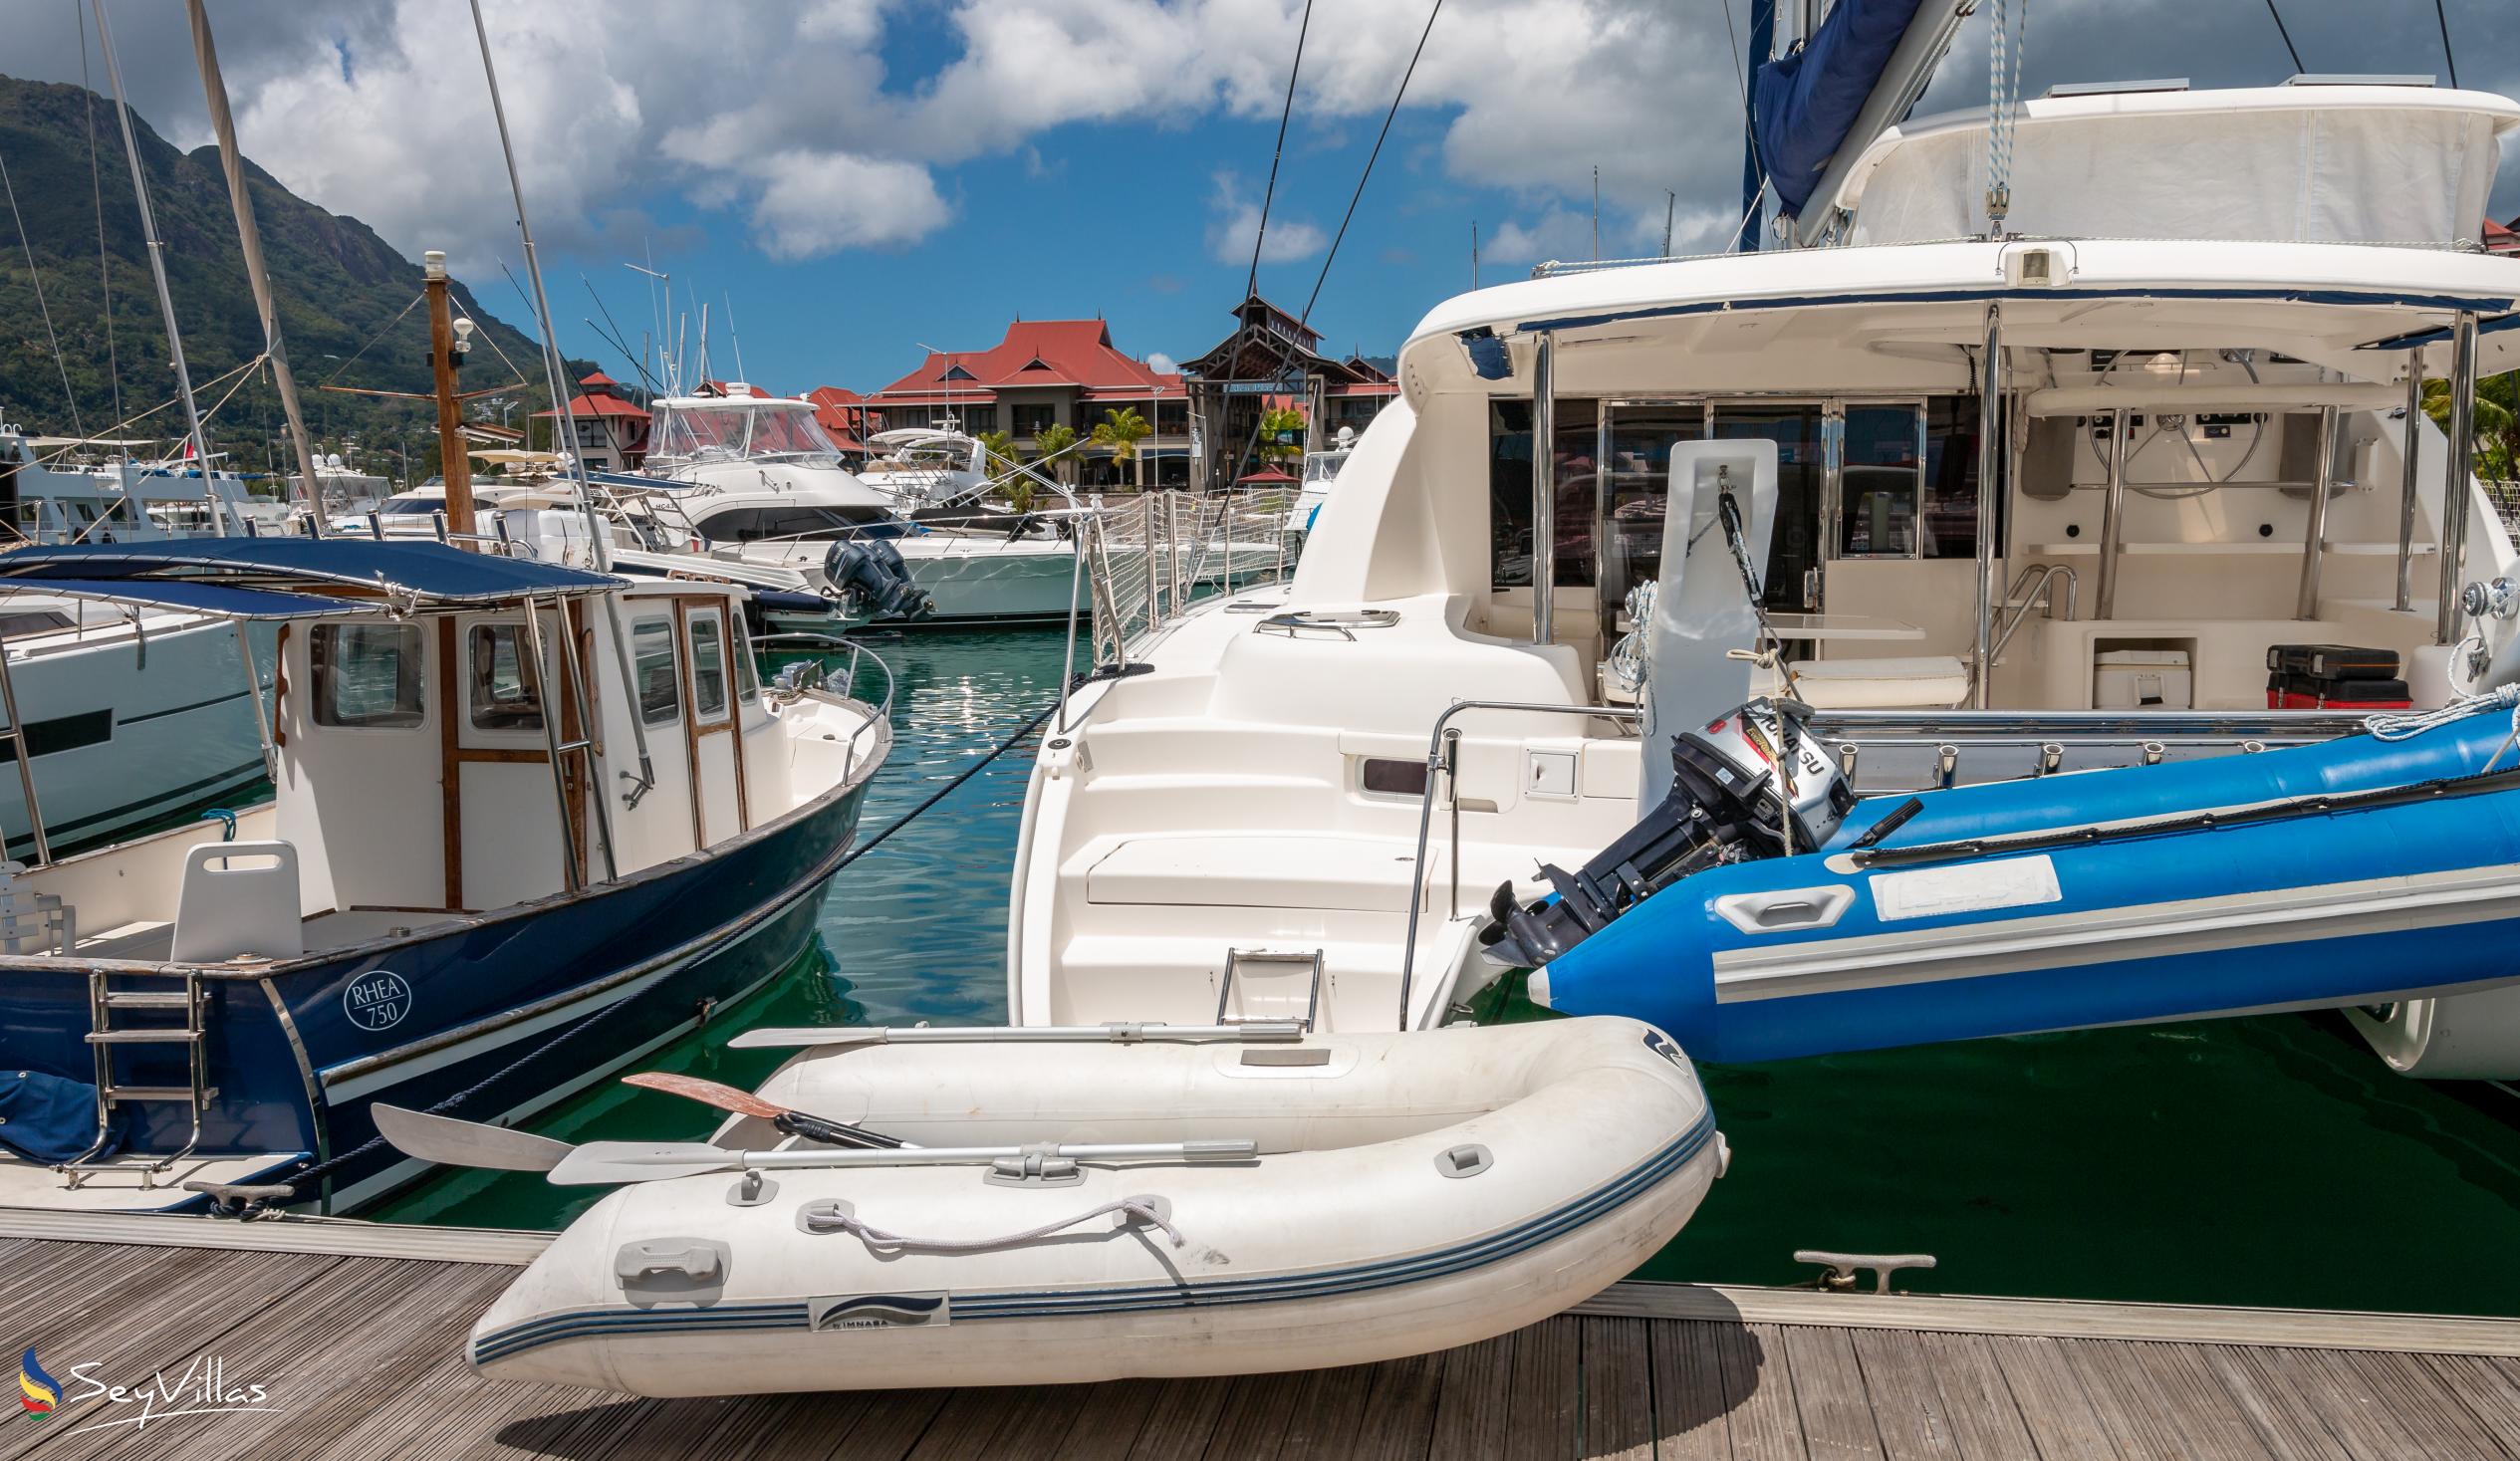 Foto 29: Dream Yacht Praslin Dream - Aussenbereich - Seychellen (Seychellen)